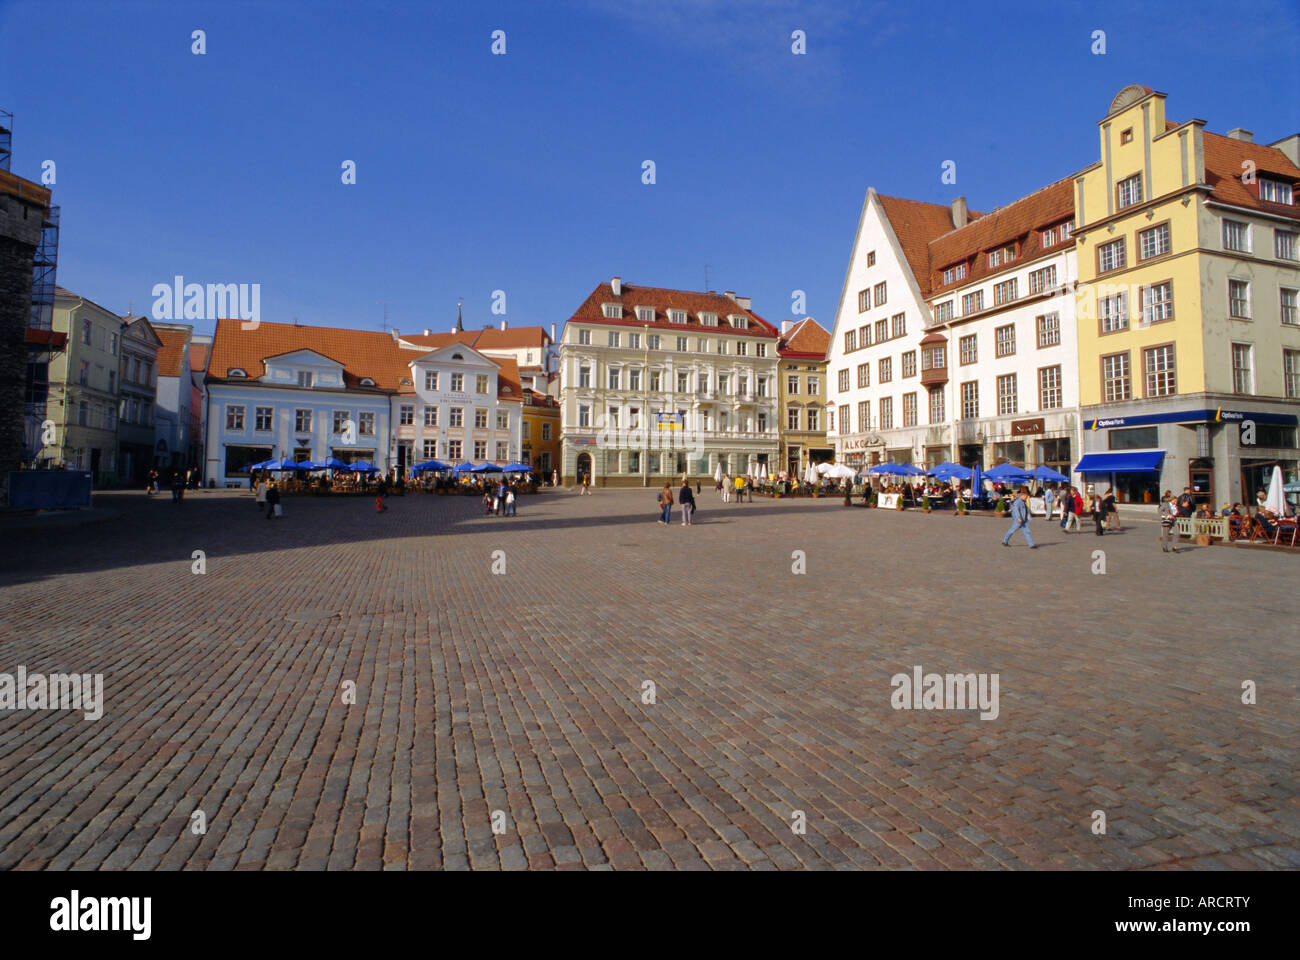 Town Hall Square, The Old Town, Tallinn, Estonia, Europe Stock Photo